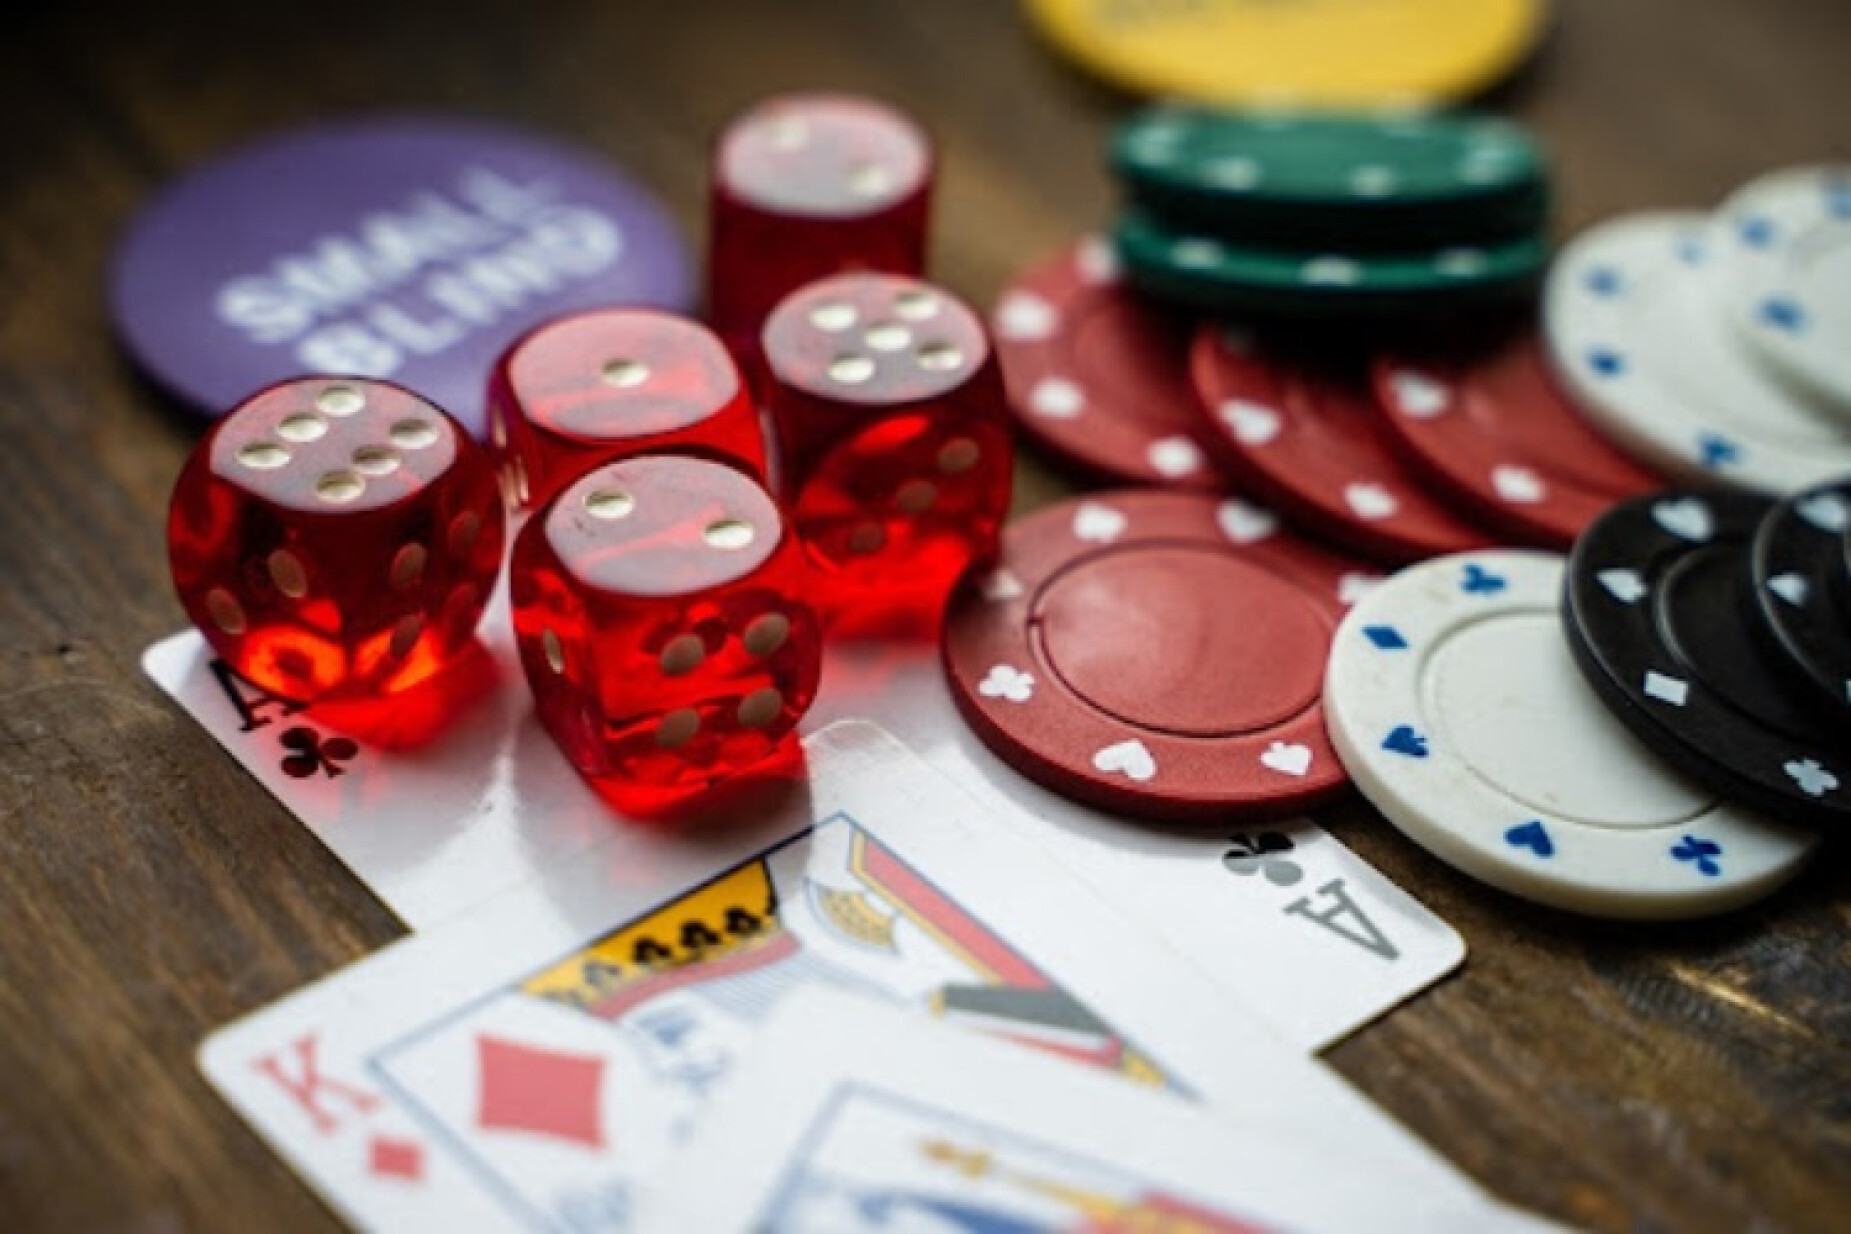 Melhor site para jogar poker online grátis: 5 dicas para os